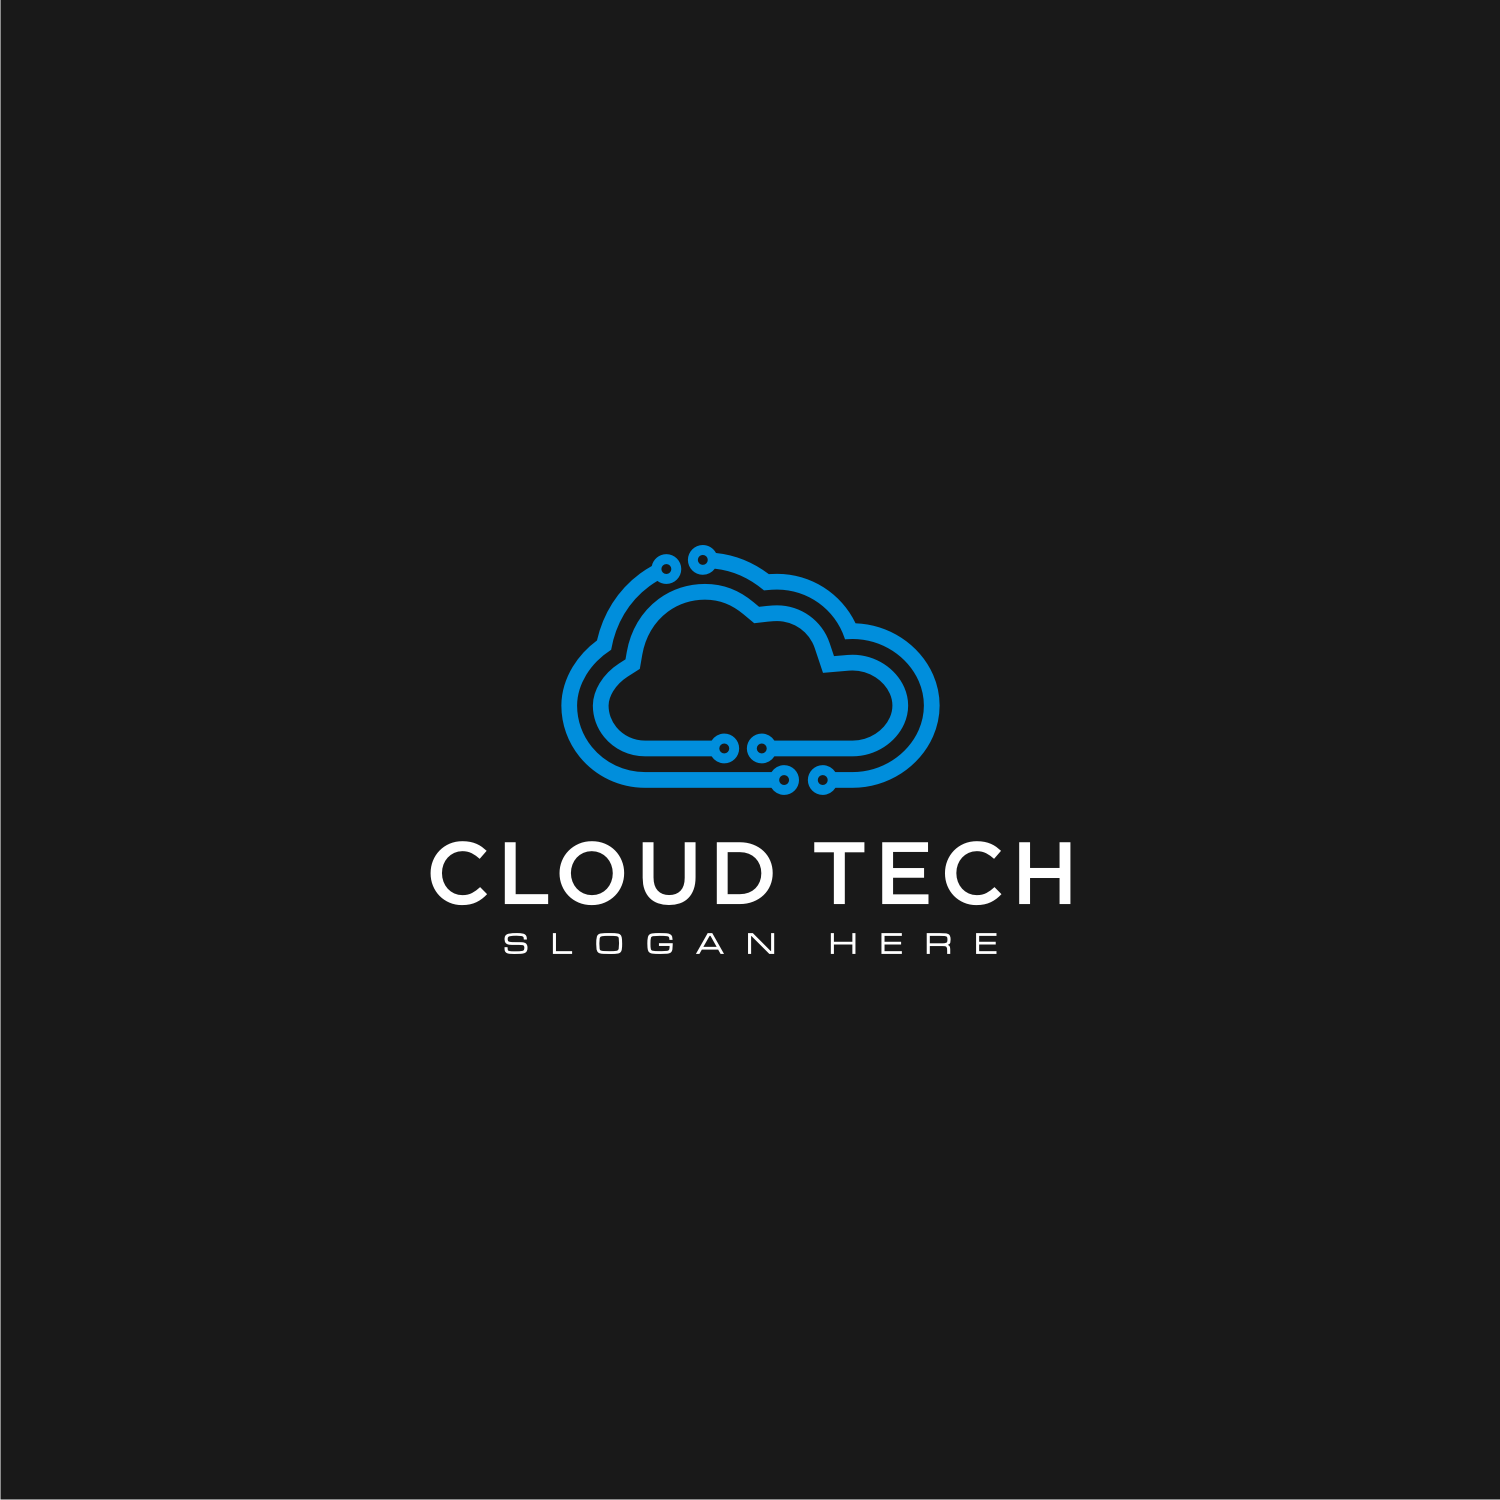 Cloud Technology Vector Template Design.